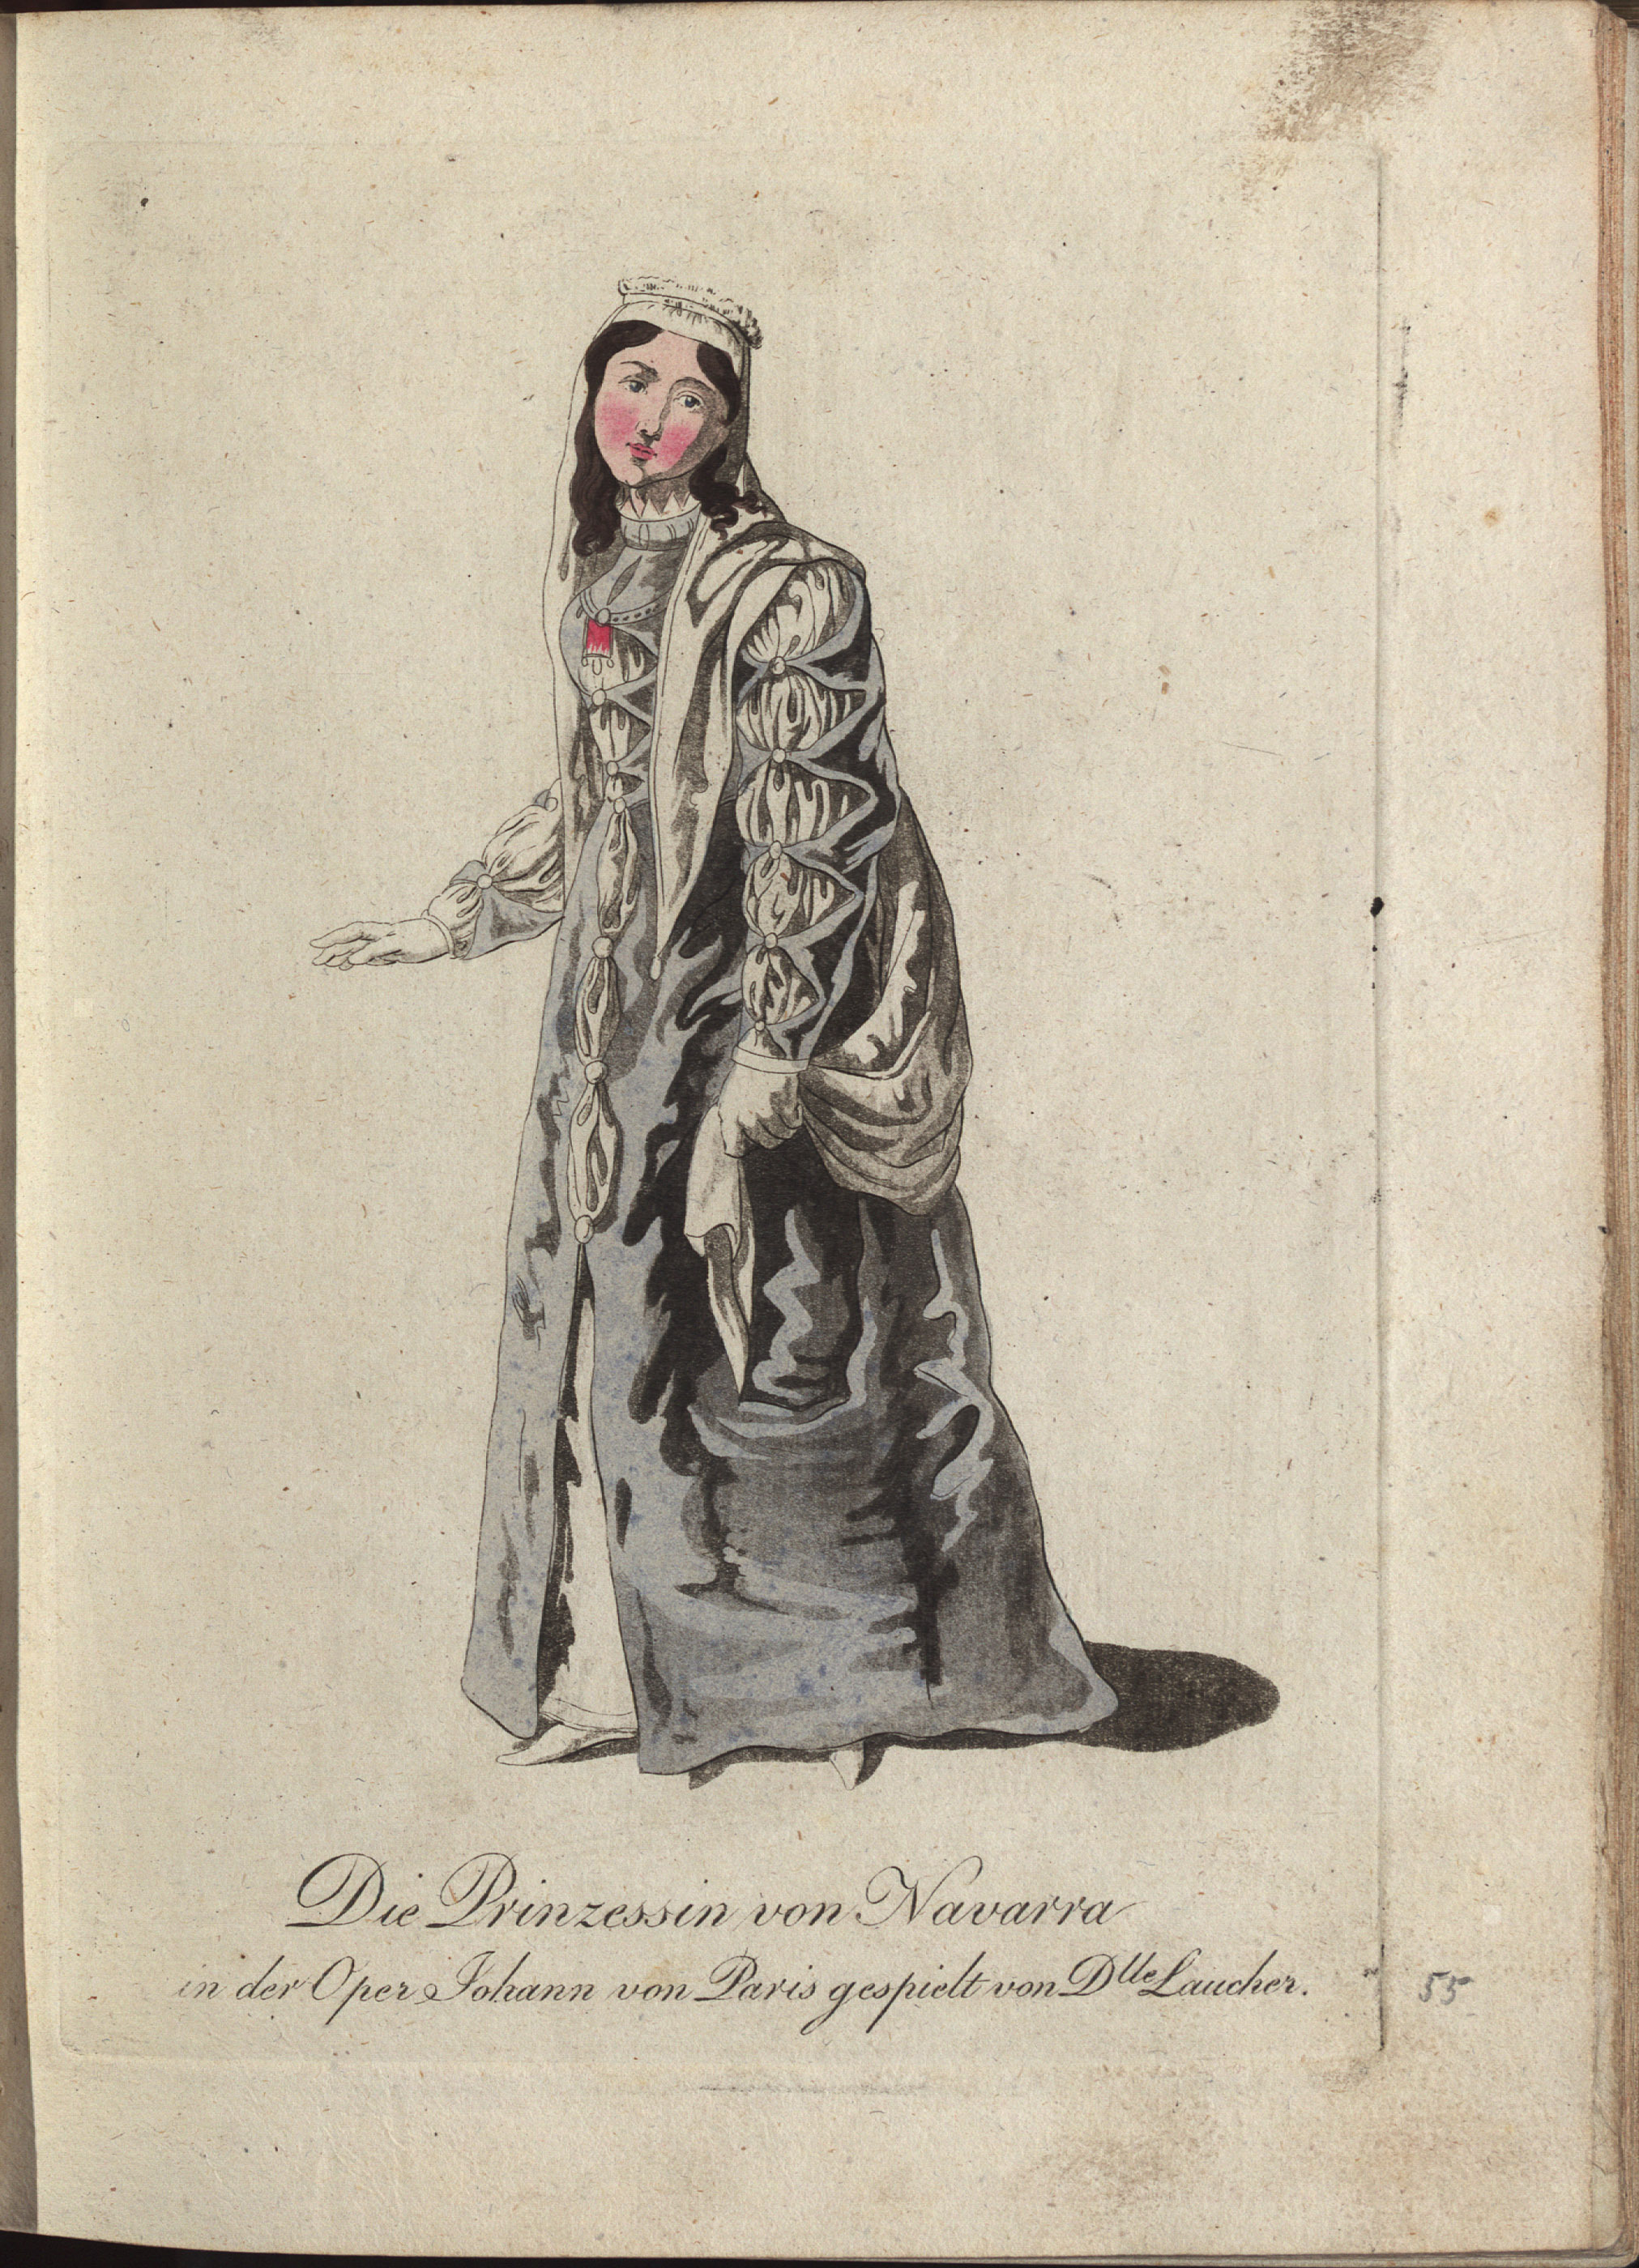 Johann von Paris von Philipp von Stubenrauch